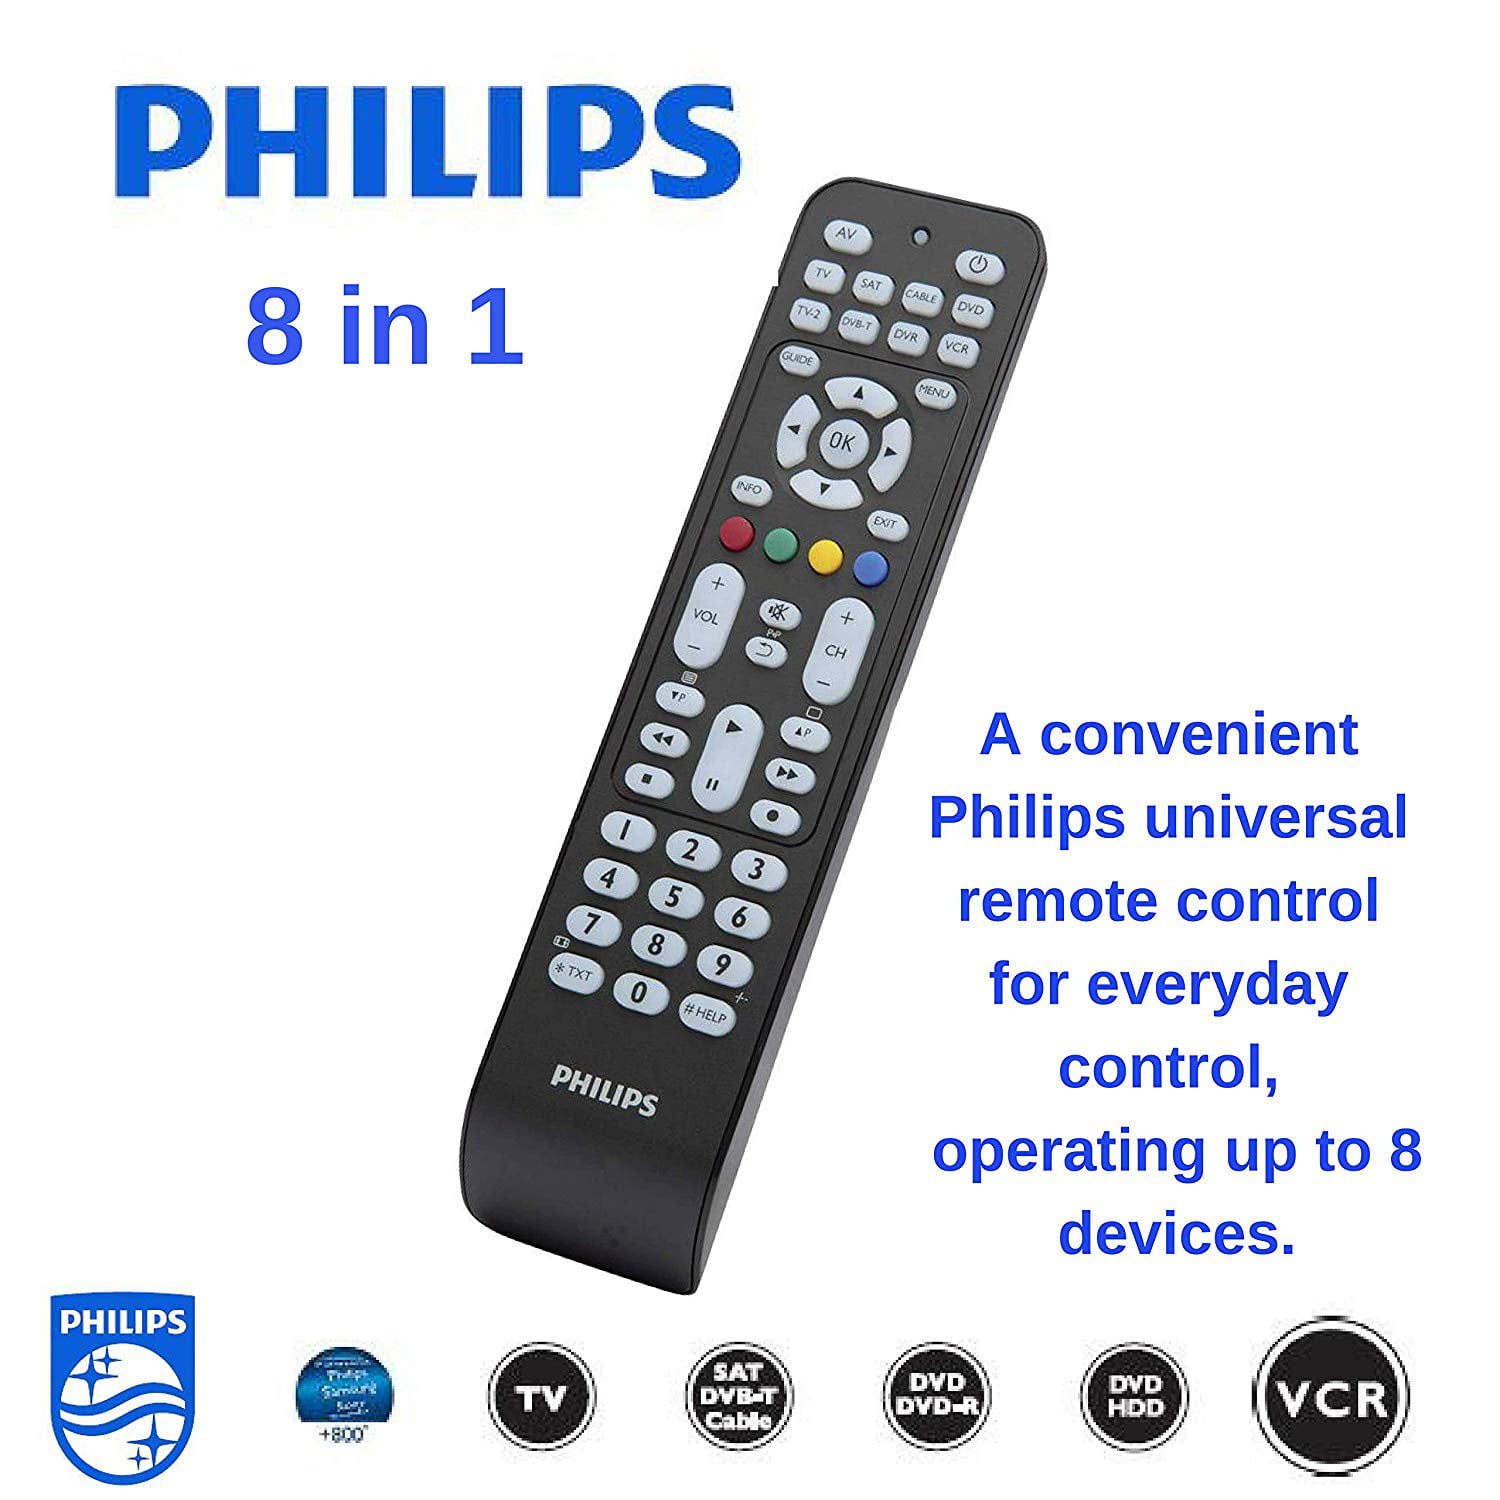 Philips universalnij pult 4 v1. Настроить телевизор филипс универсальным пультом